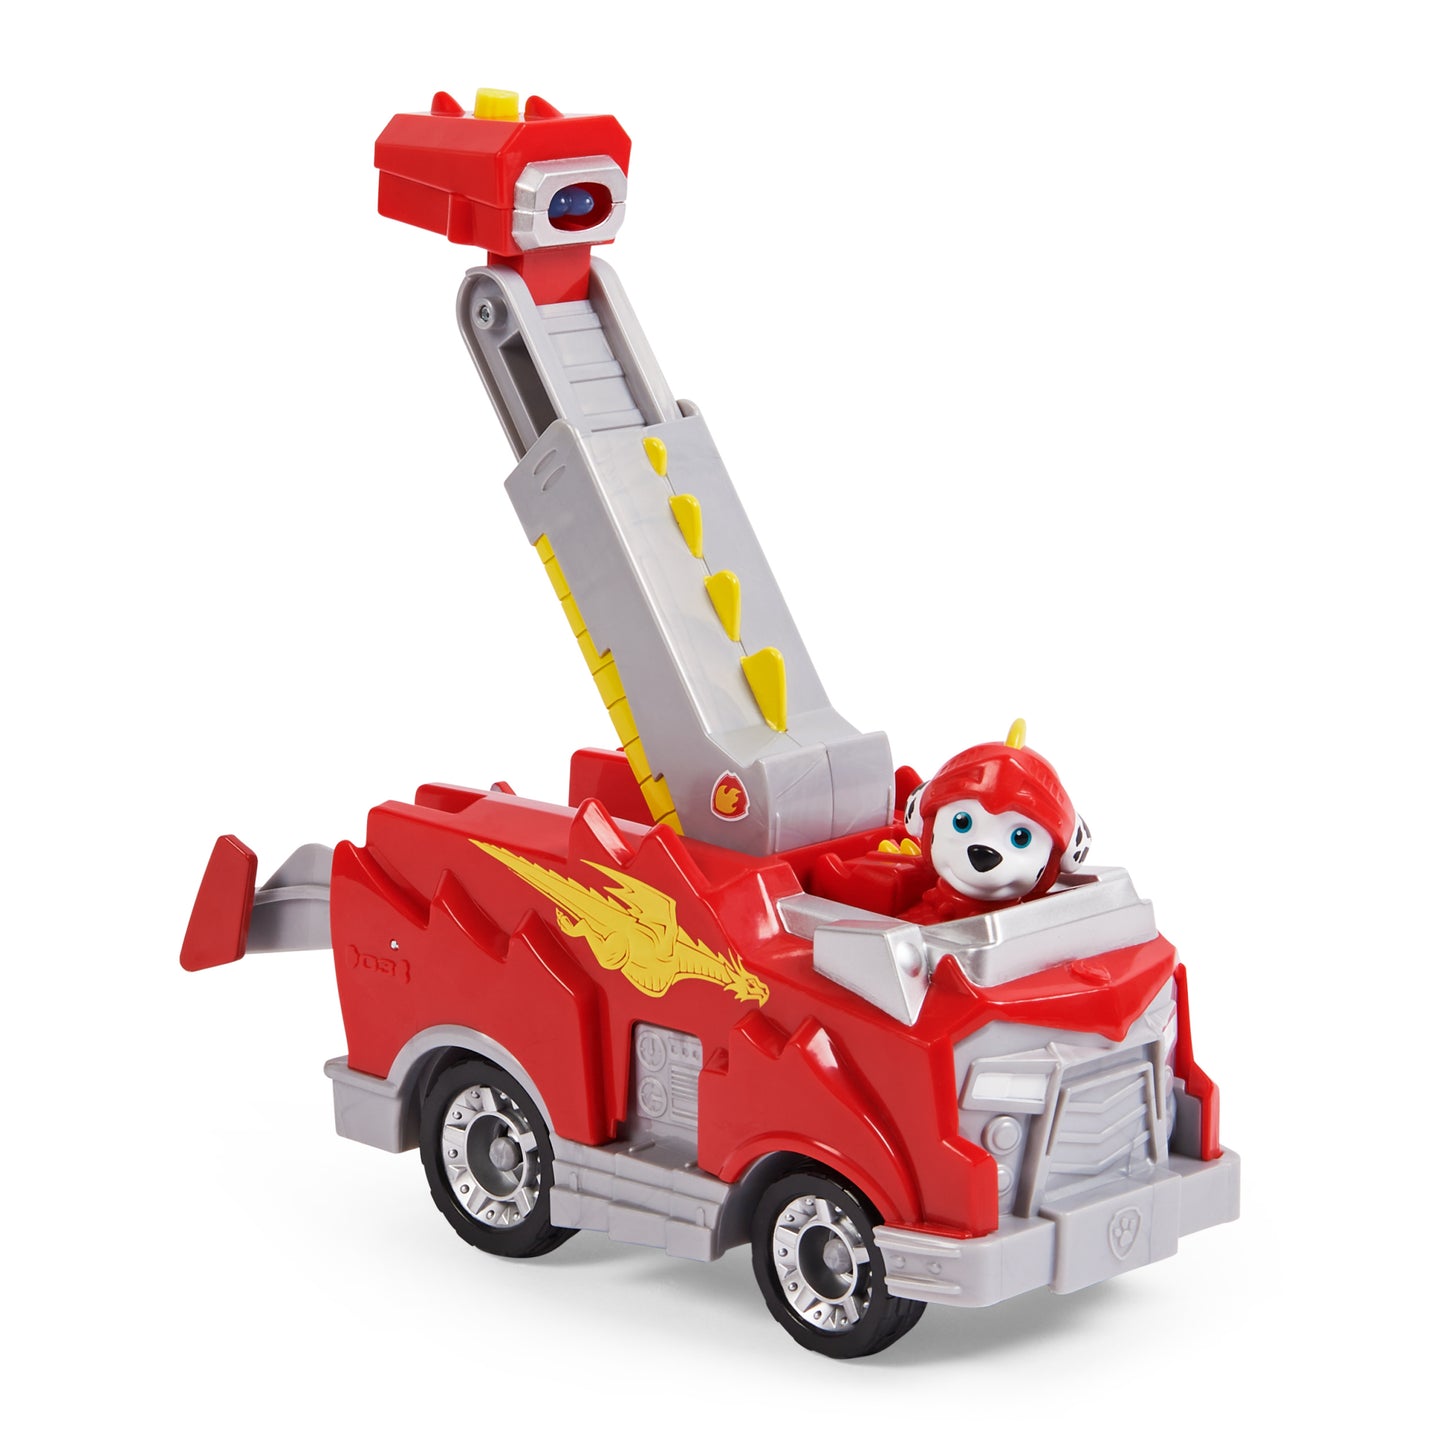 PAW PatrolRescue Knights Marshall Transforming Toy Car mit Sammlerstück Action Figur, Kinder Spielzeuge für 3 Jahre und älter